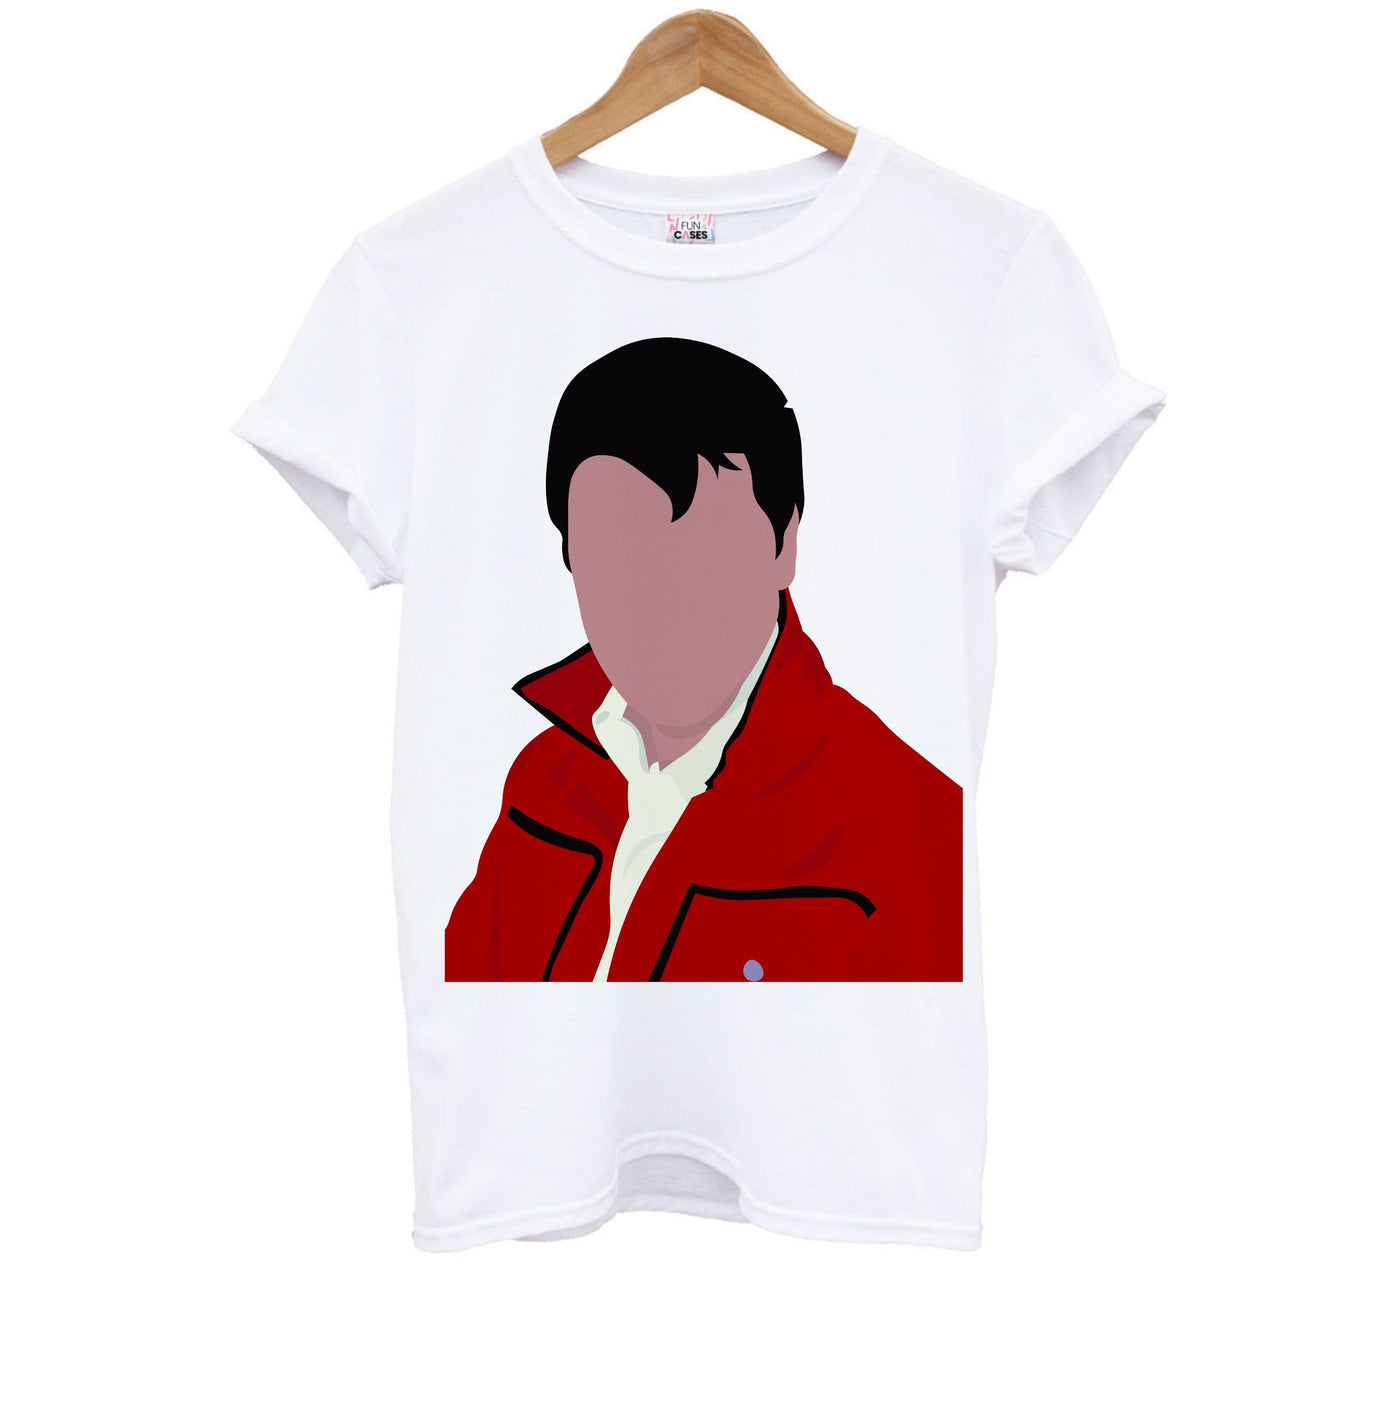 Red Suit - Elvis Kids T-Shirt